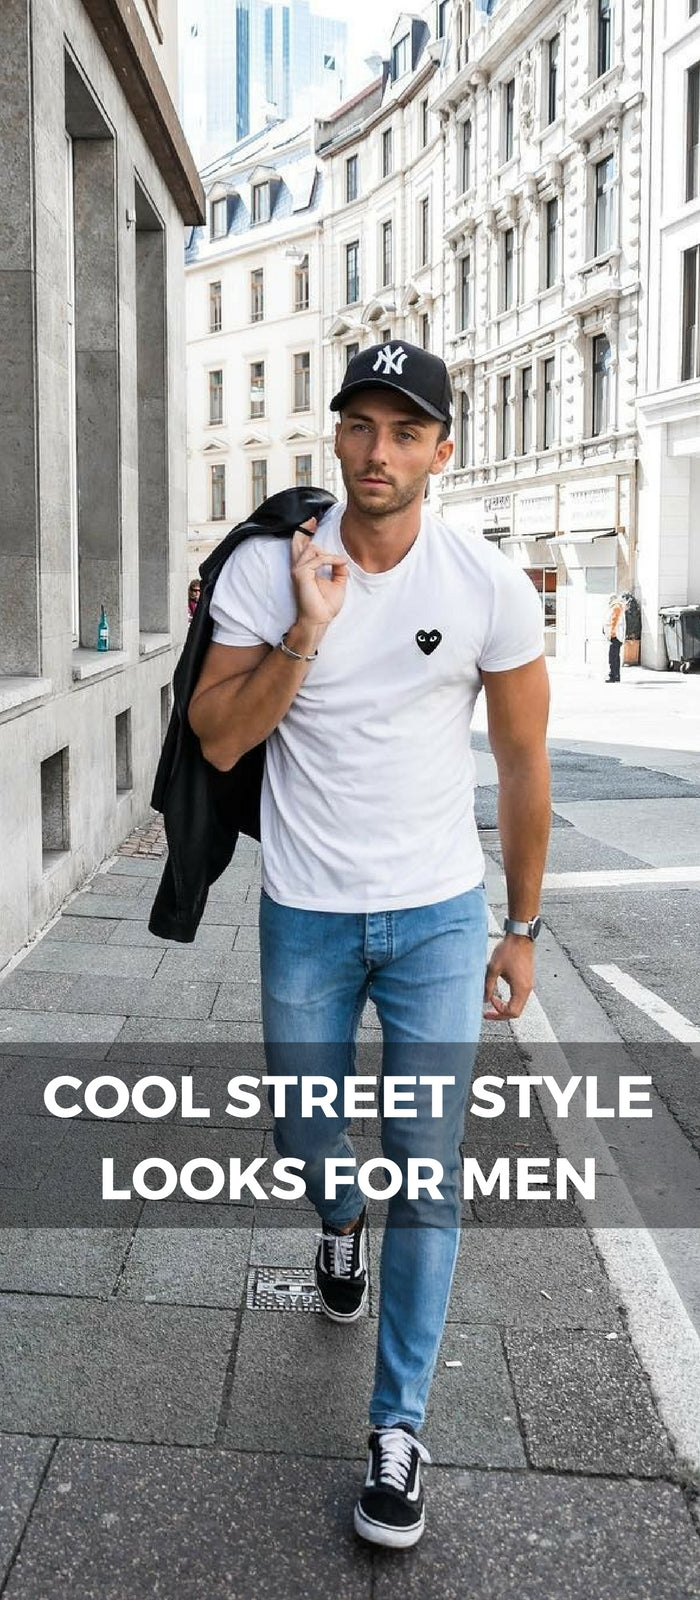 Street style looks for men